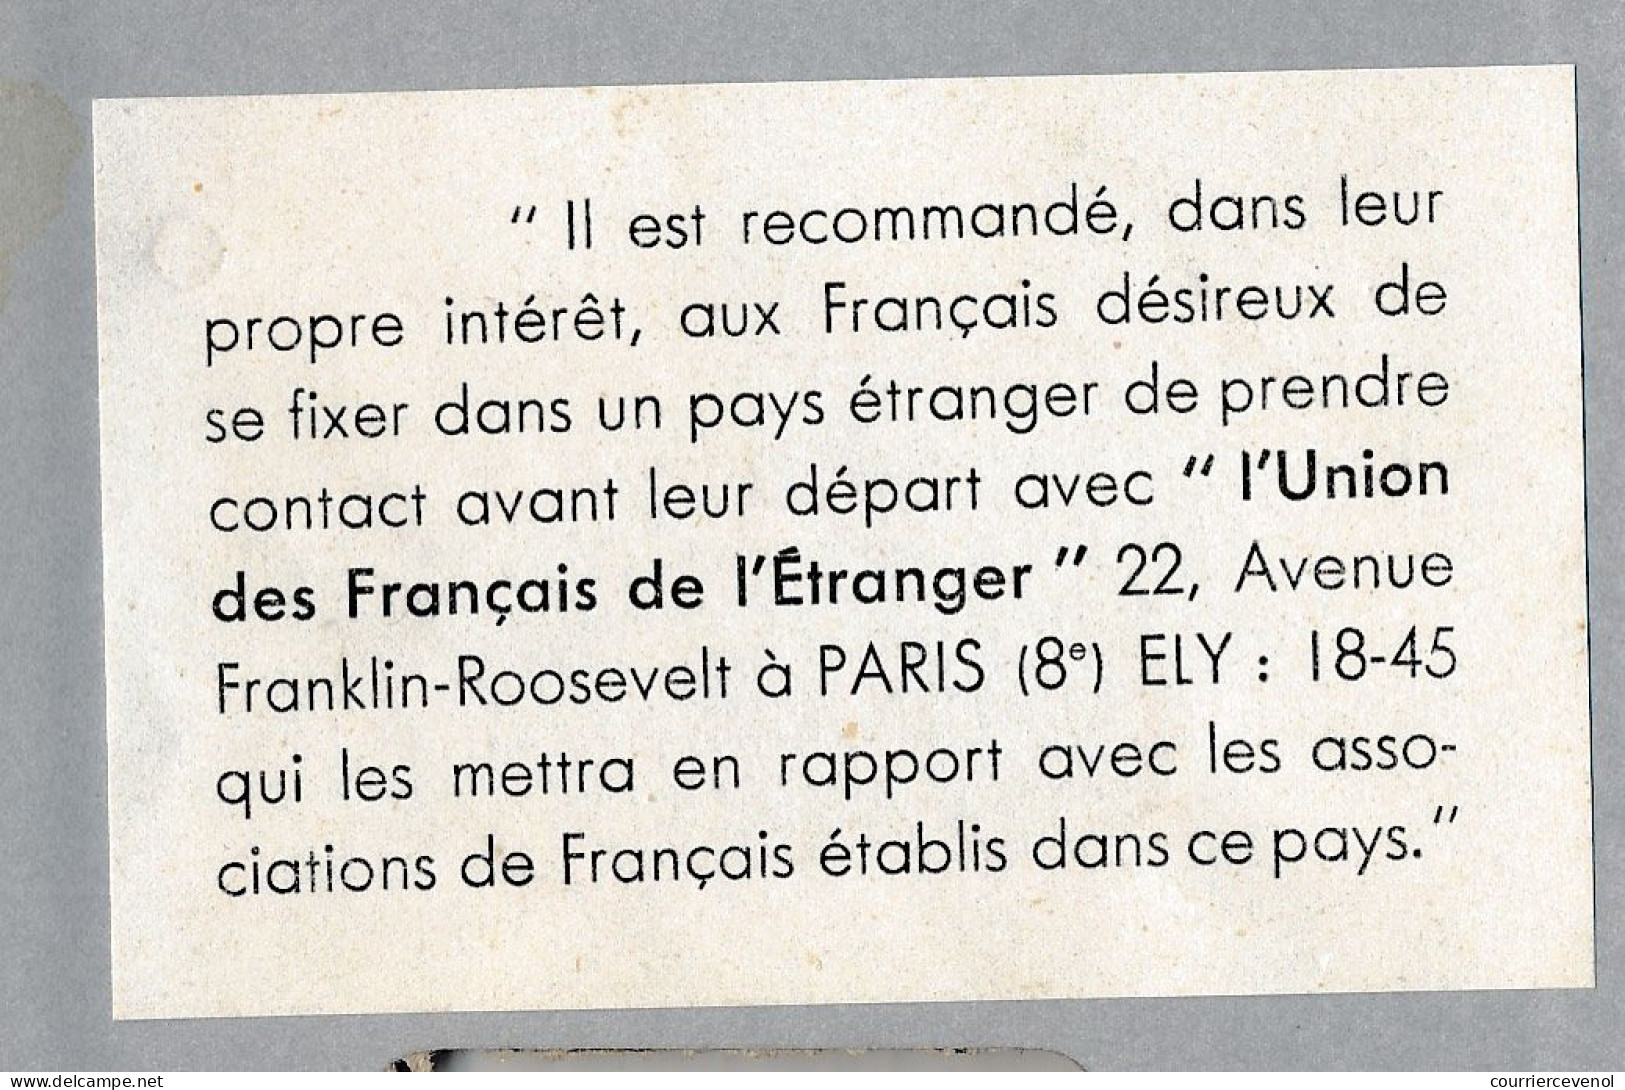 FRANCE / Maroc - Passeport 1960 Fiscal 32,00NF Visas Casablanca + Carte D'identité Fiscaux 4f Et 9F - Même Personne - Covers & Documents